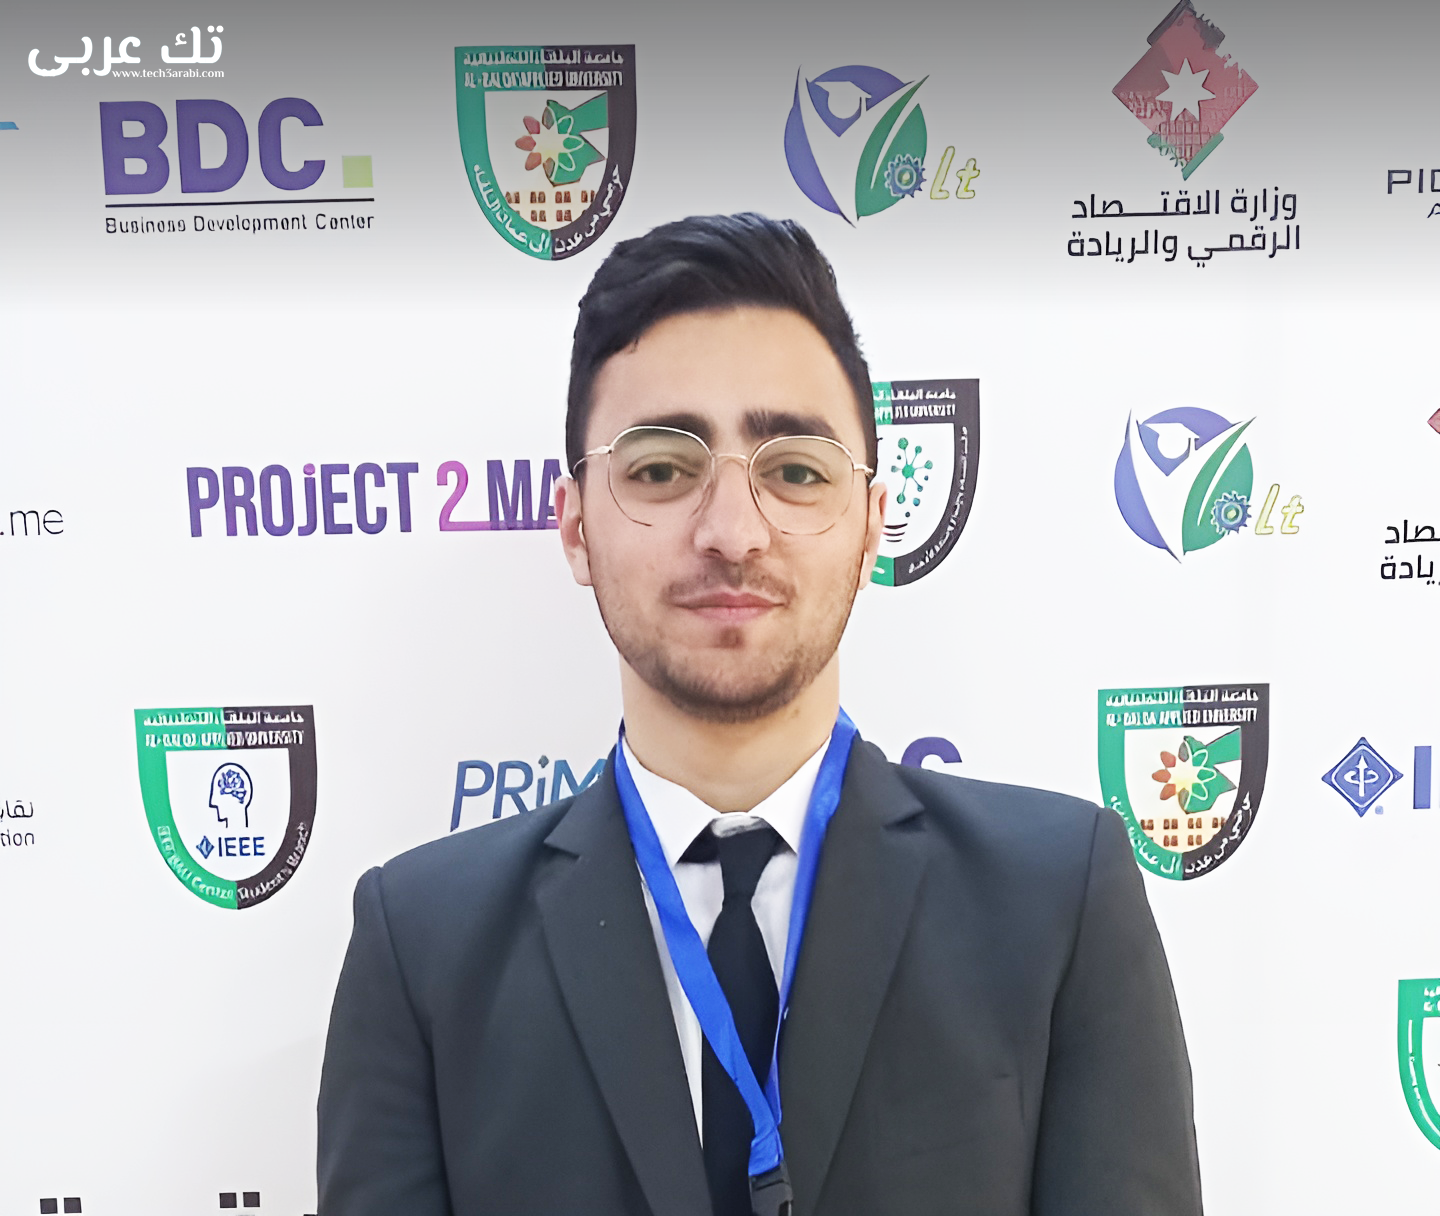 مقابلة فريق تك عربي مع المهندس احمد ابو دية رئيس لجنة الابتكار الشبابية في جامعة البلقاء التطبيقية